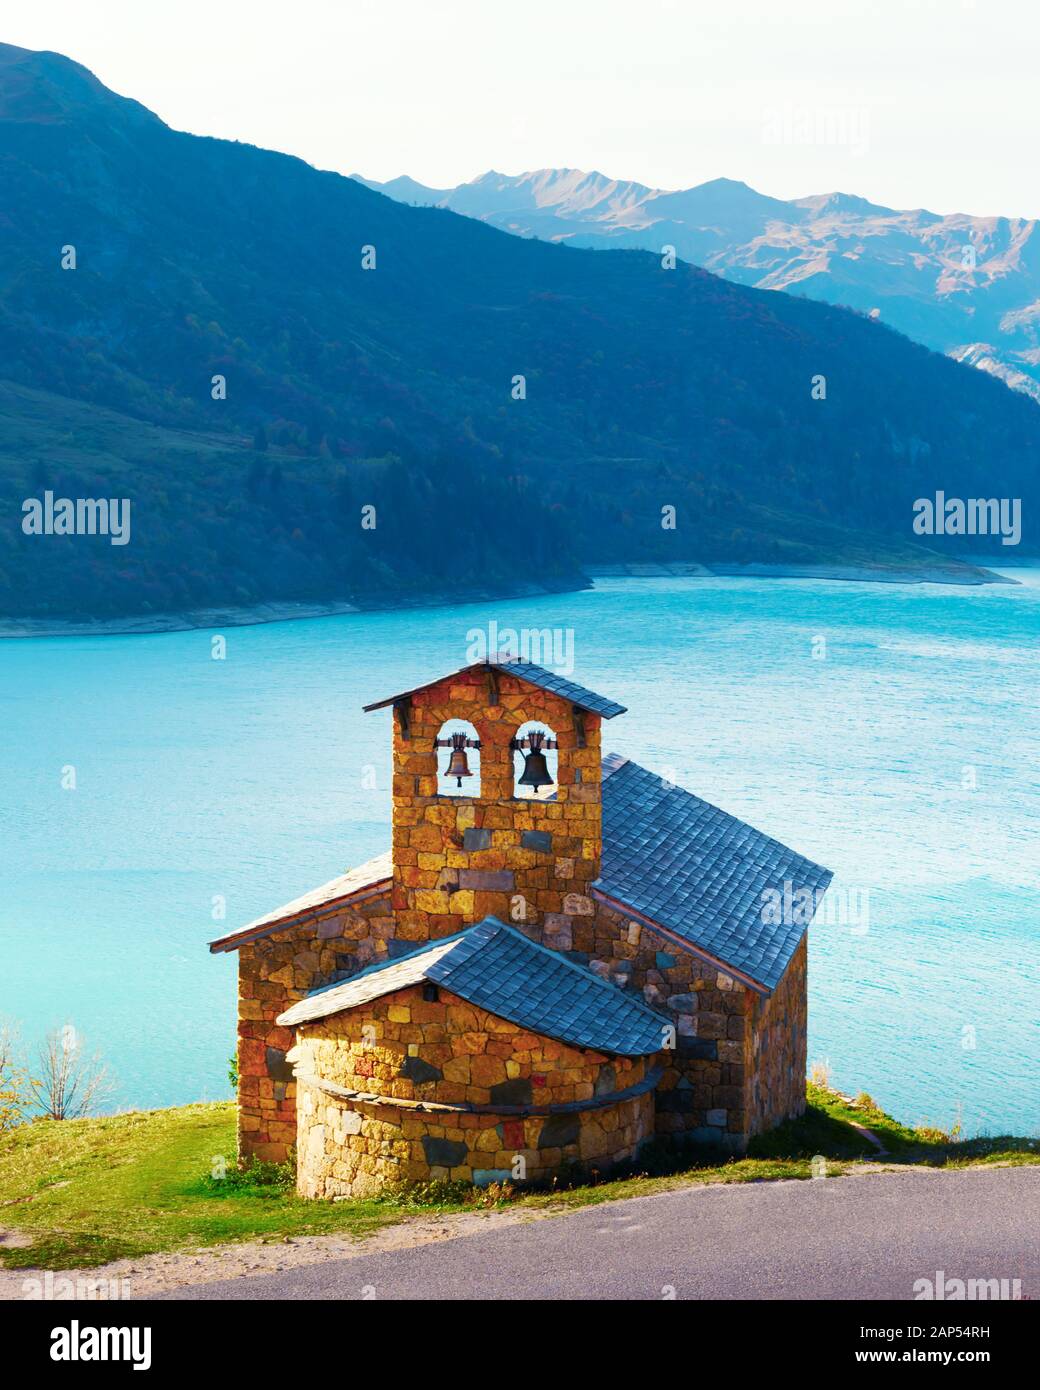 Vista pintoresca capilla de piedra sobre la costa del lago Roselend (Lac de Roselend) en Francia Alpes (Auvergne-Rhone-Alpes). Fotografía paisajística Foto de stock